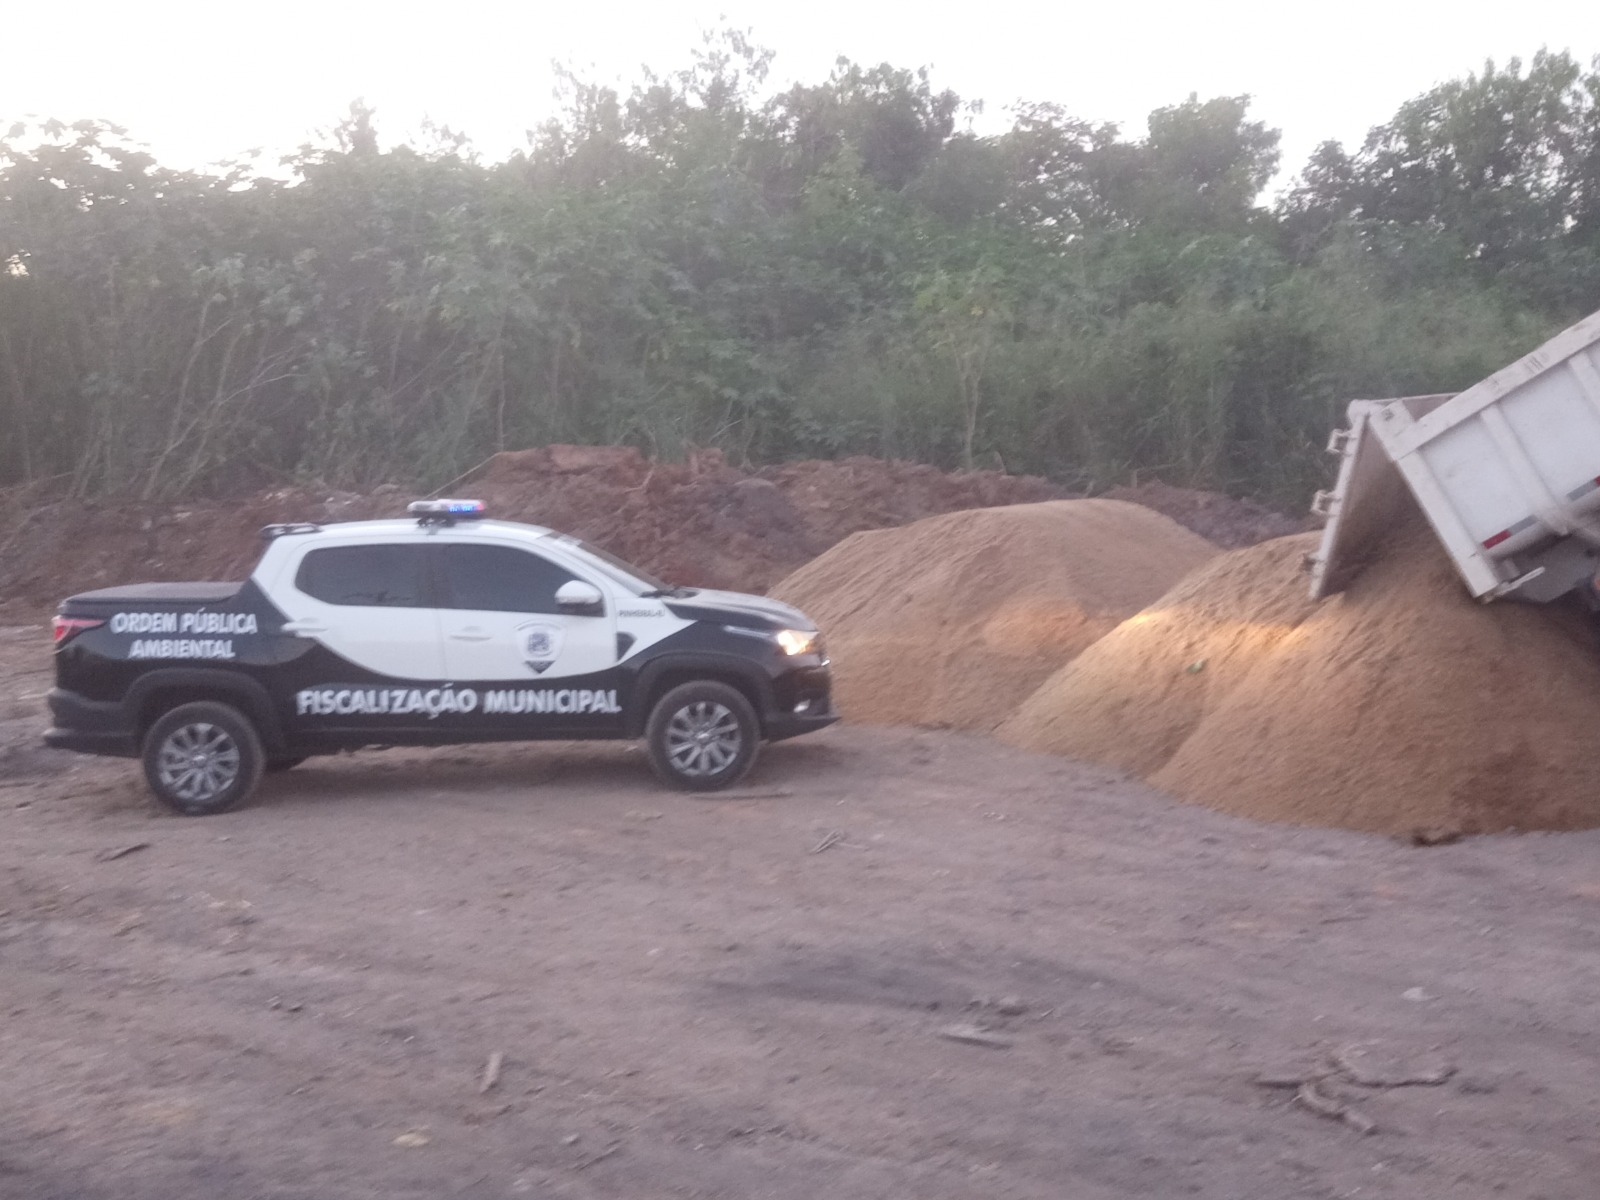 Operação em combate à Exploração ilegal de areia termina com duas prisões em Pinheiral